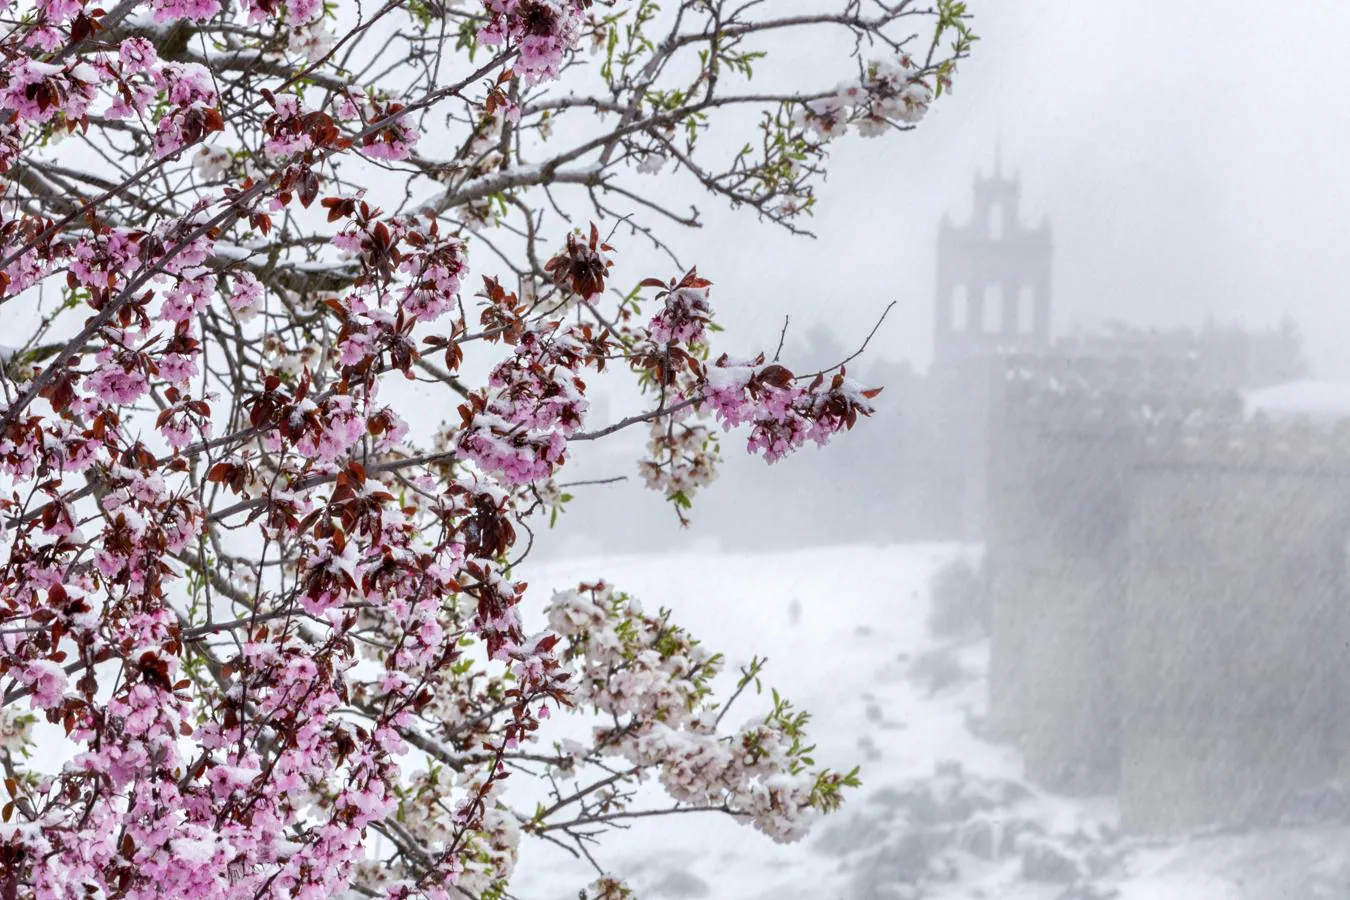 Detalle de un árbol en flor bajo una intensa nevada en Ávila.